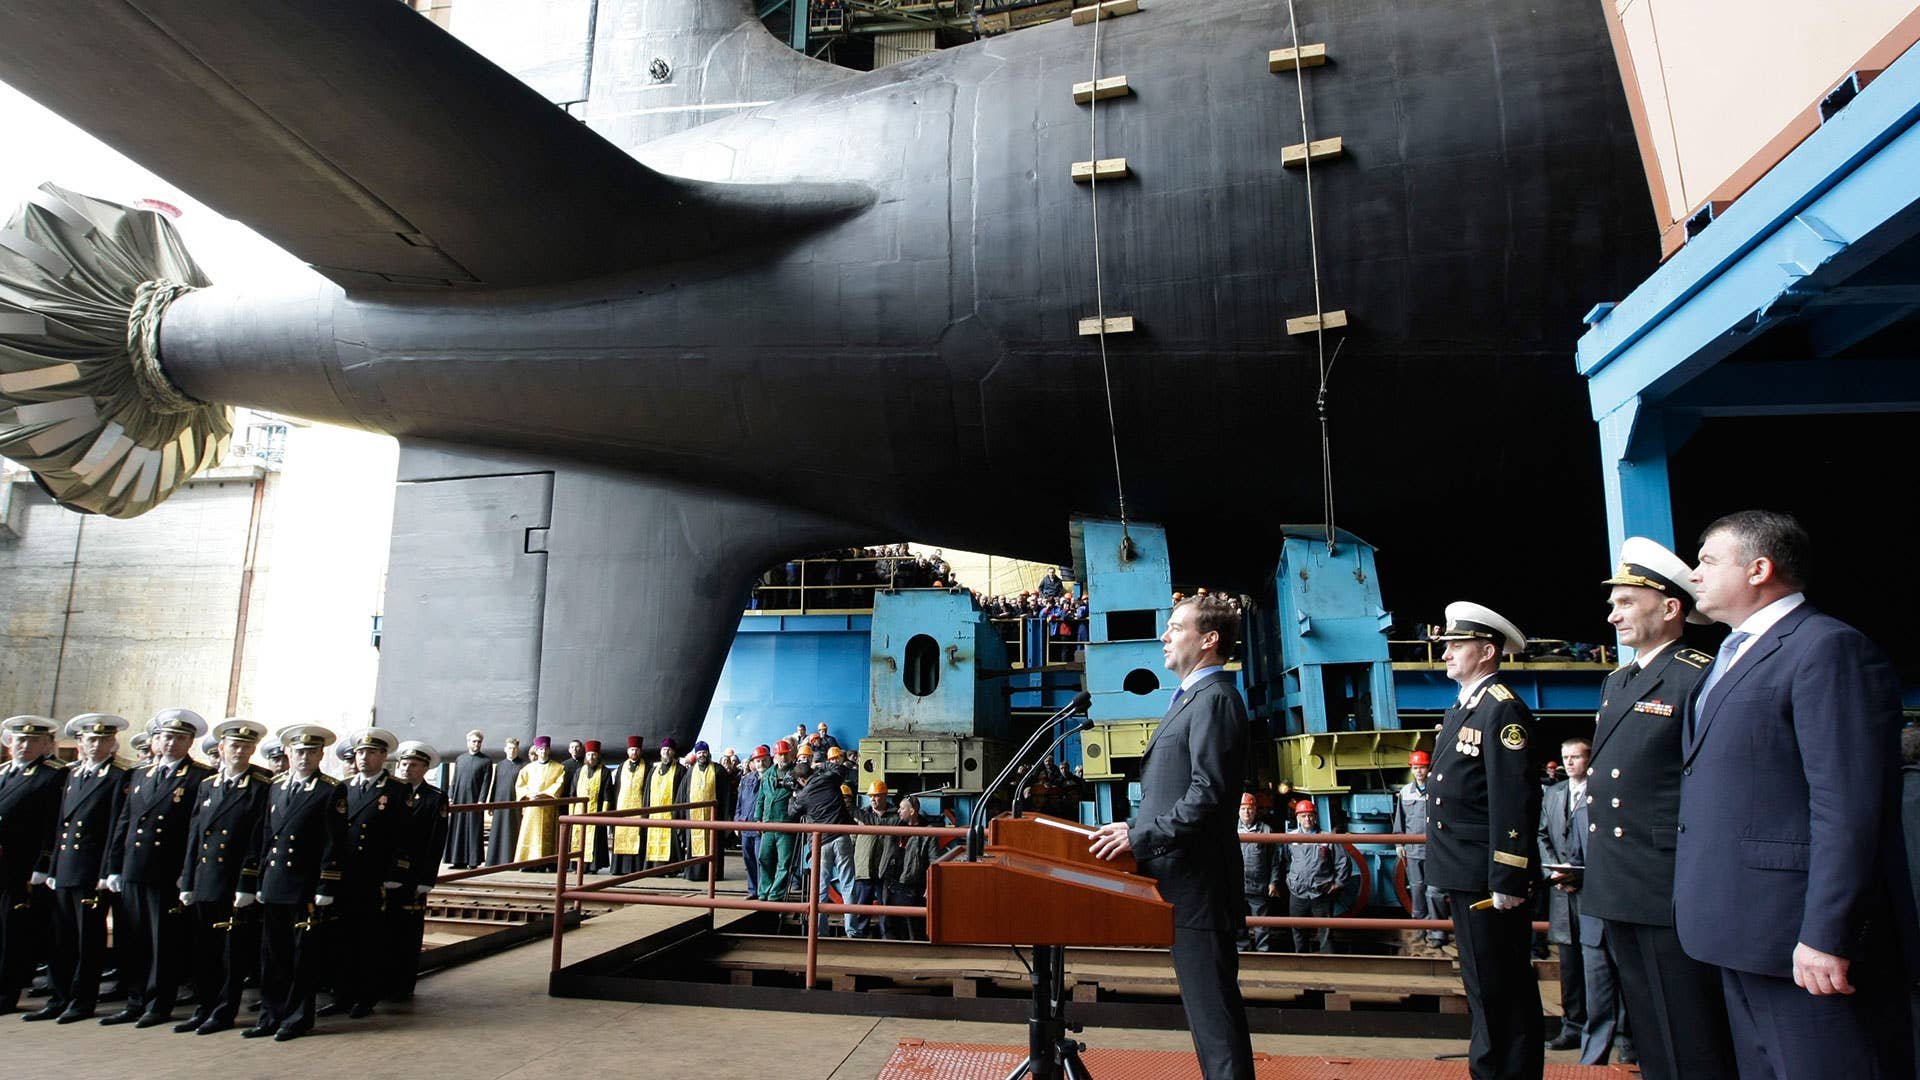 Сборка подводной лодки. Атомные подводные лодки Северодвинск. Атомная подводная лодка Северодвинск. Севмаш Северодвинск подводная лодка. Многоцелевая атомная подводная лодка «Северодвинск».